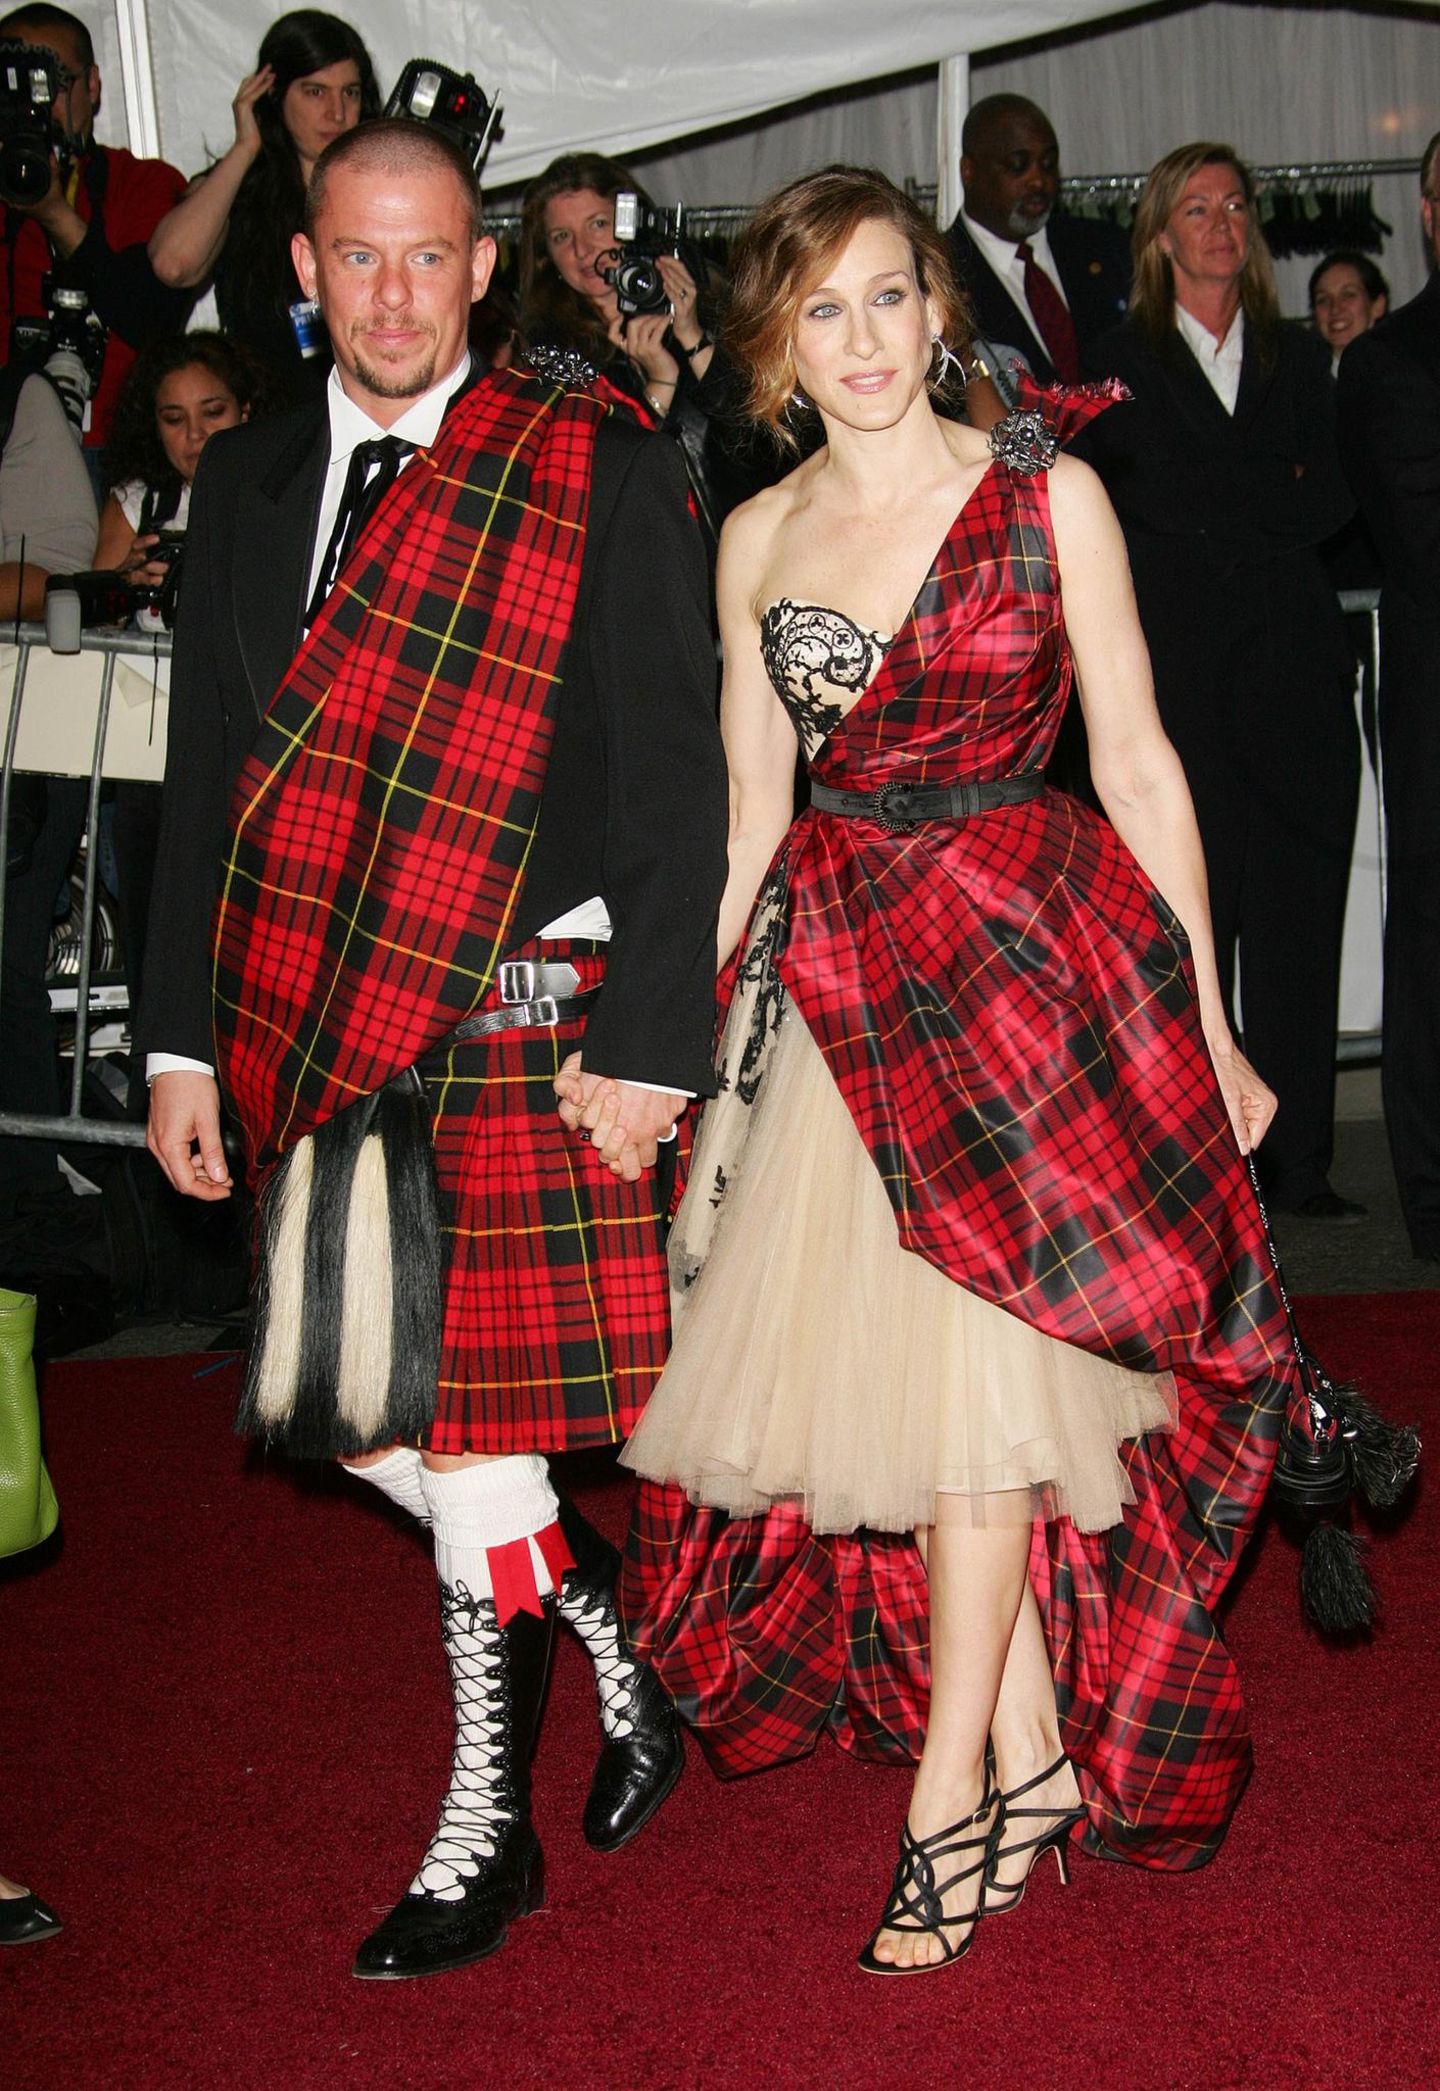 2006  Style-Doppel im Schotten-Look: Alexander McQueen († 2010) und Sarah Jessica Parker sind in ihrem schräg-traditonellen Partnerlook nicht zu übersehen.